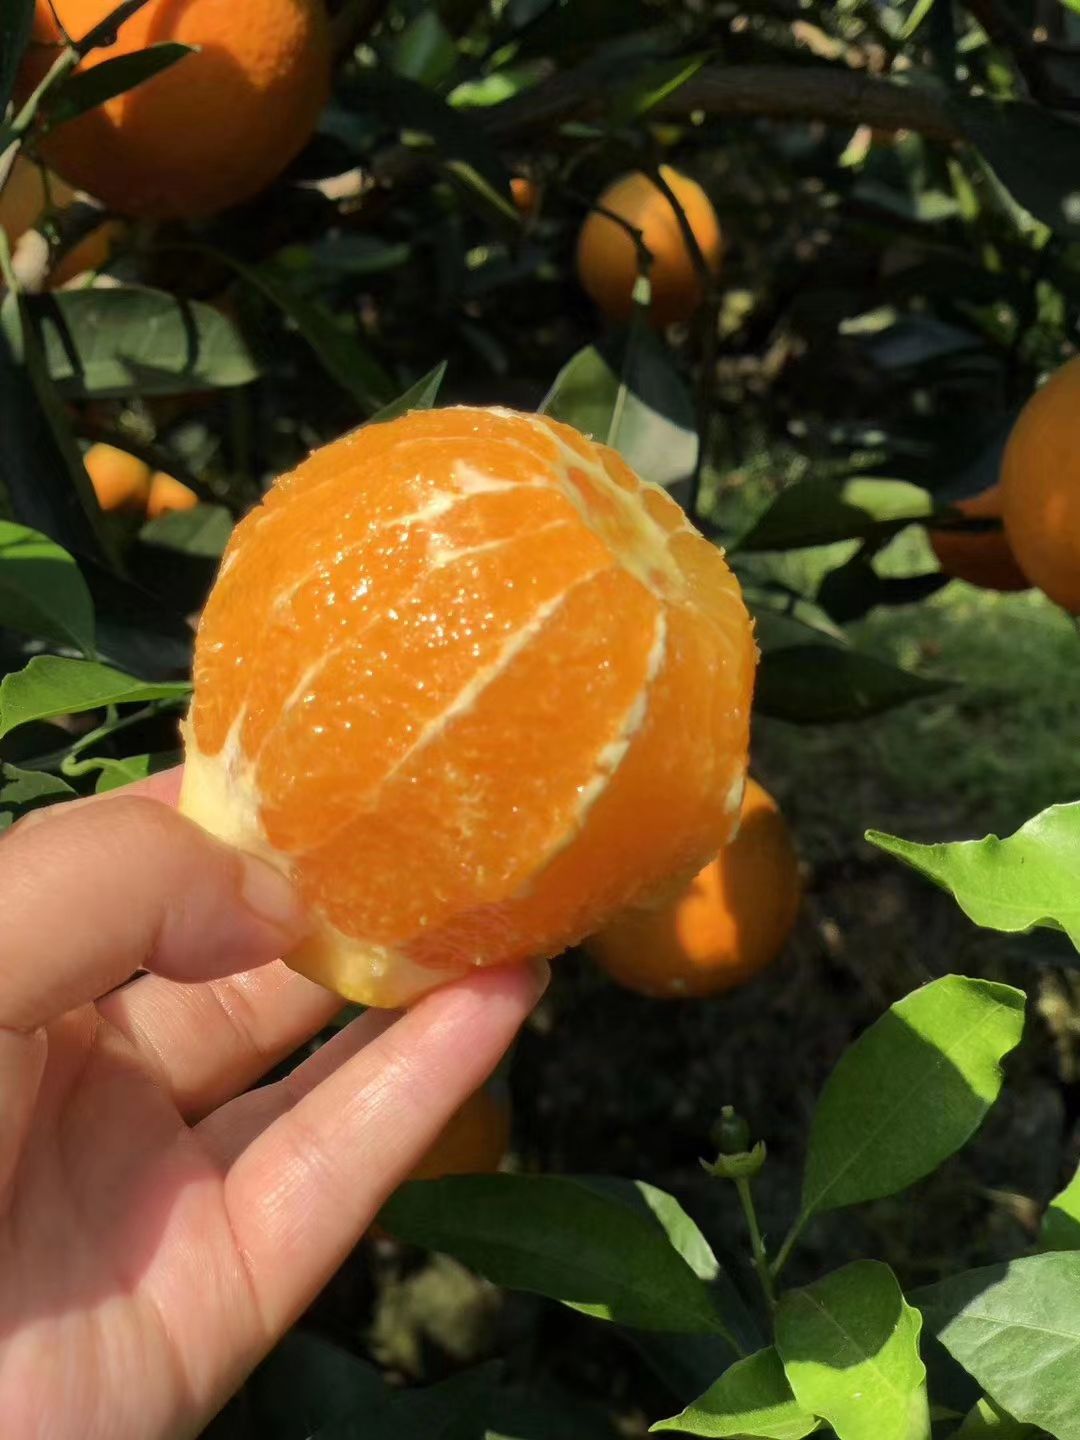 [红橙批发] 种橙子的农村小姑娘价格2.5元/斤 - 惠农网